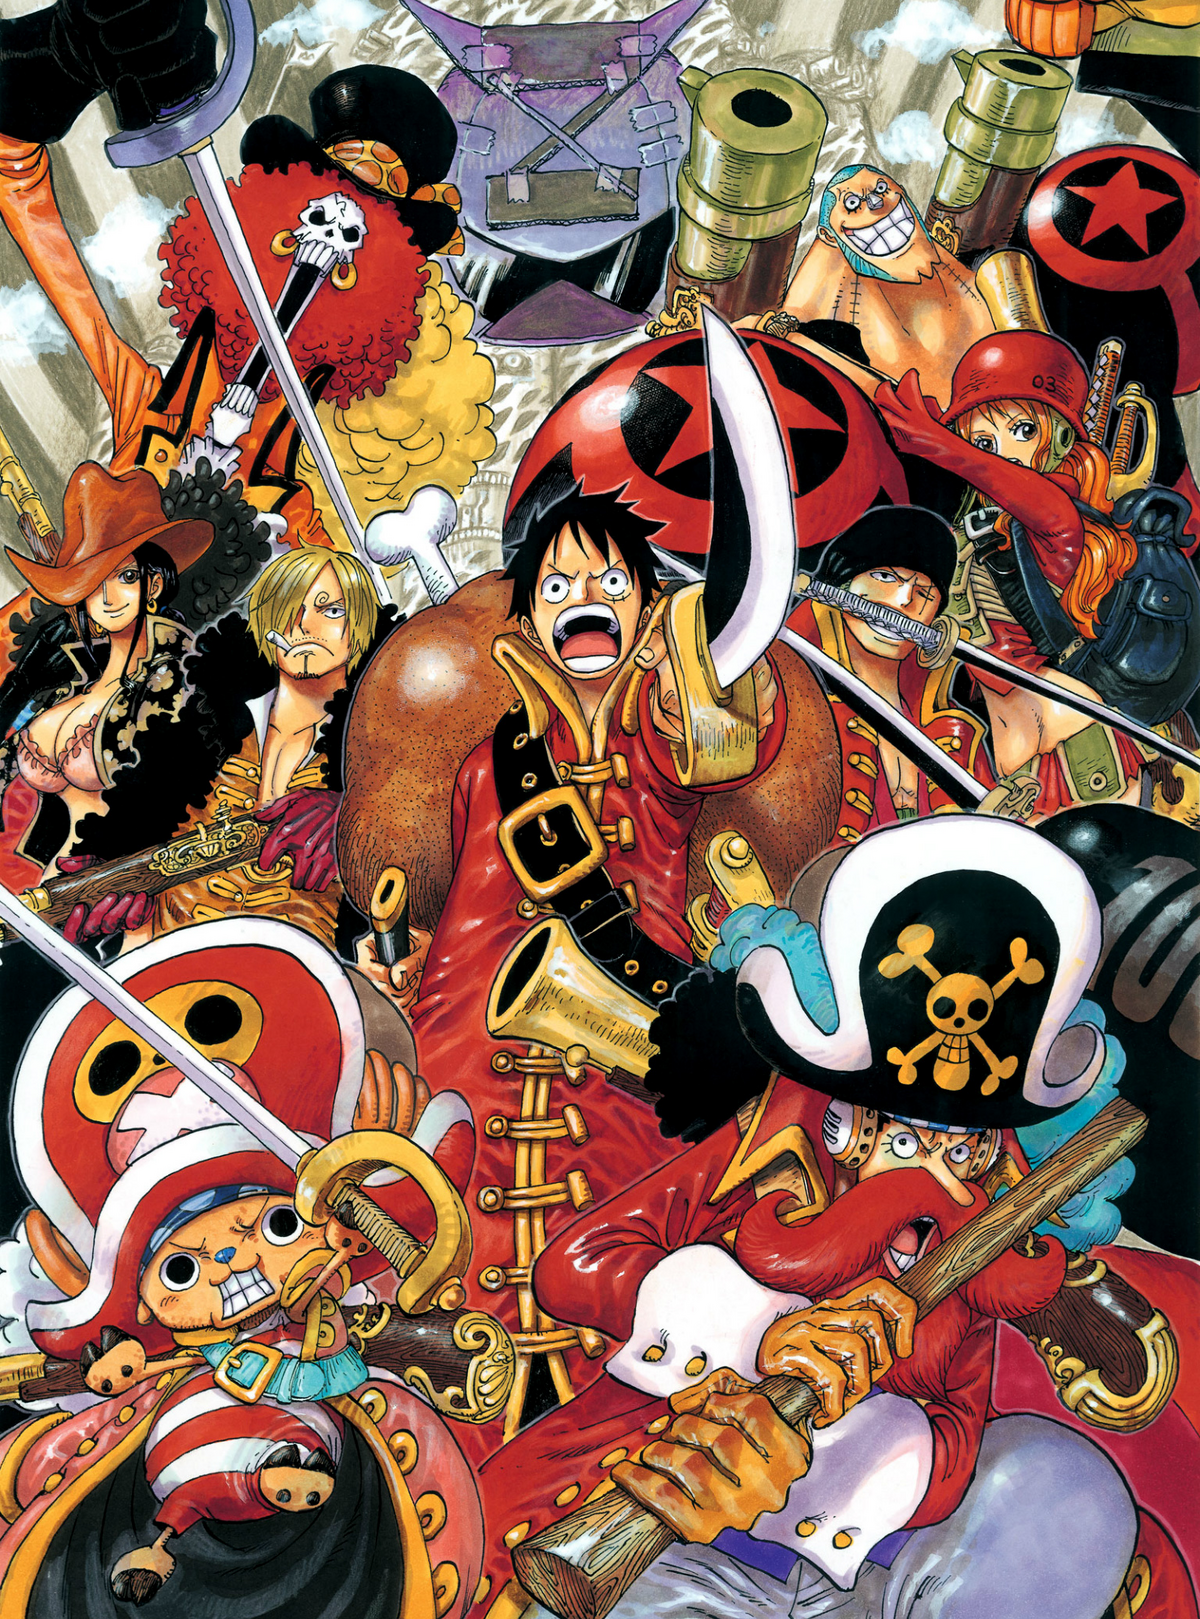 One Piece Film: Z, One Piece Wiki